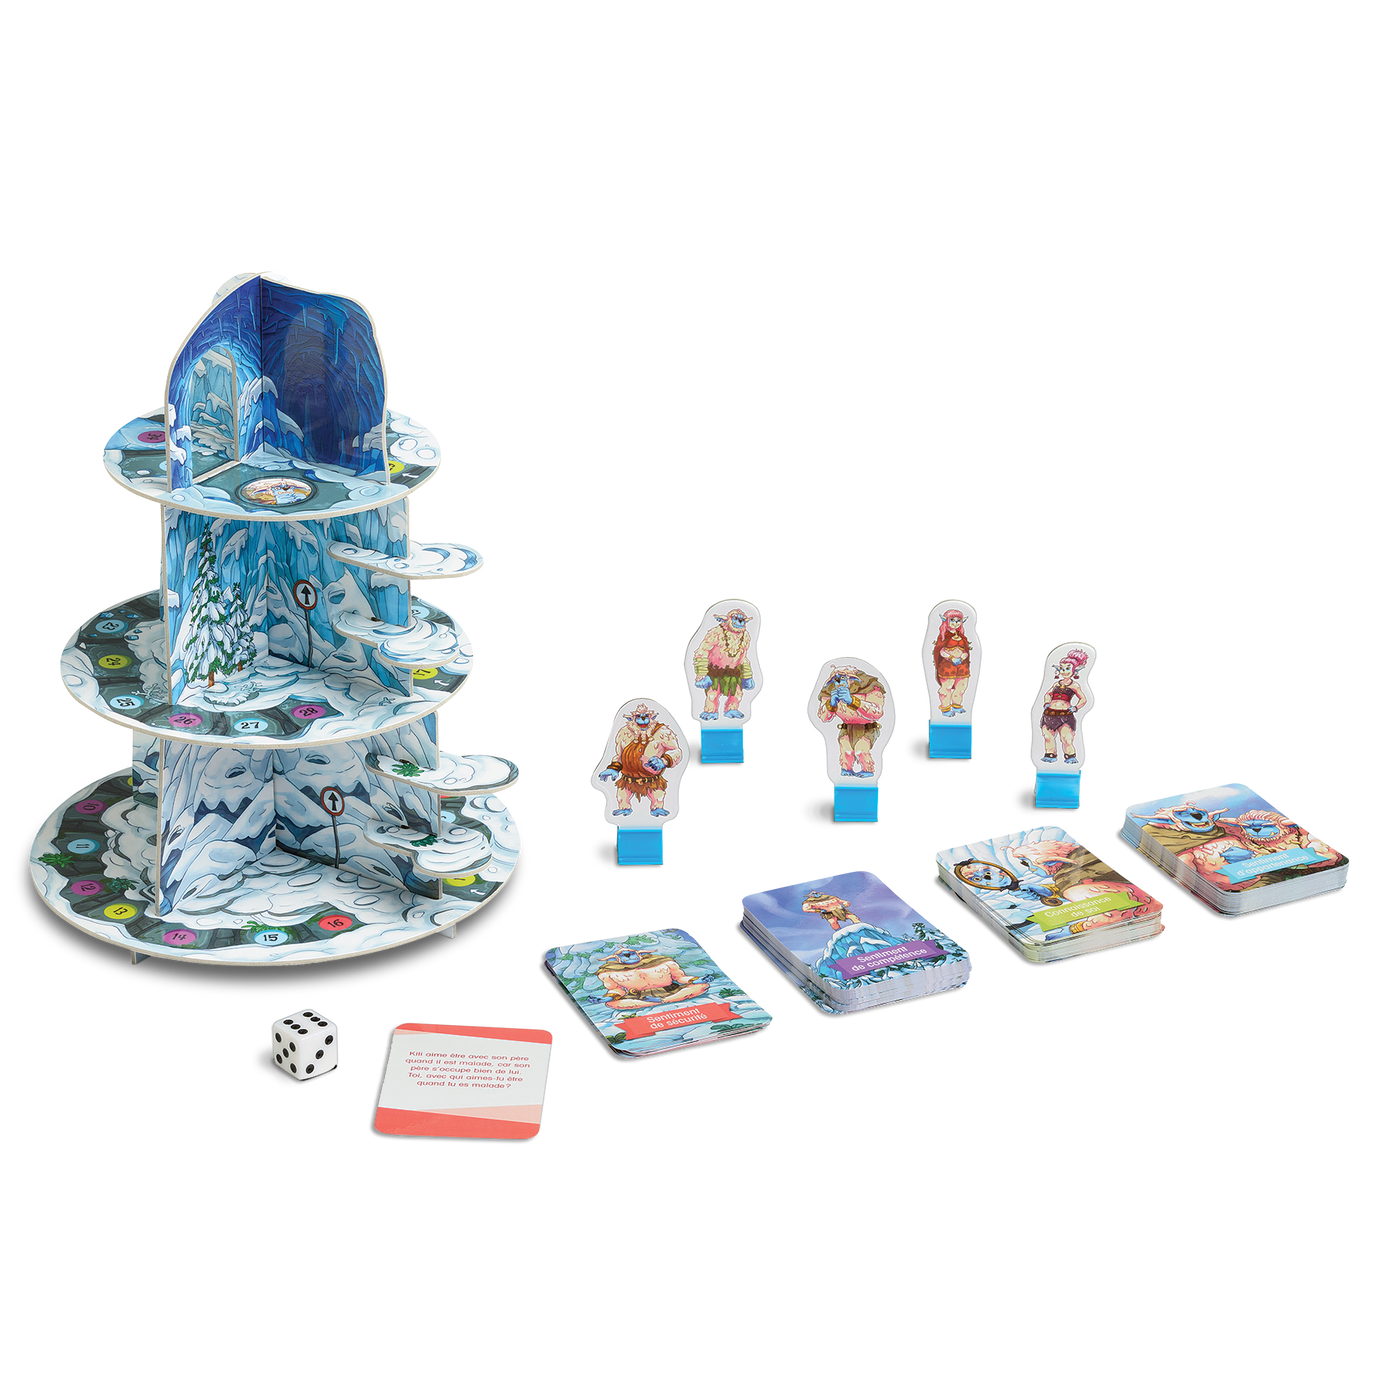 La montagne de la confiance - Composantes du jeu : plateau de jeu (montagne en 3D), cartes-questions, 5 pions-yétis et un dé